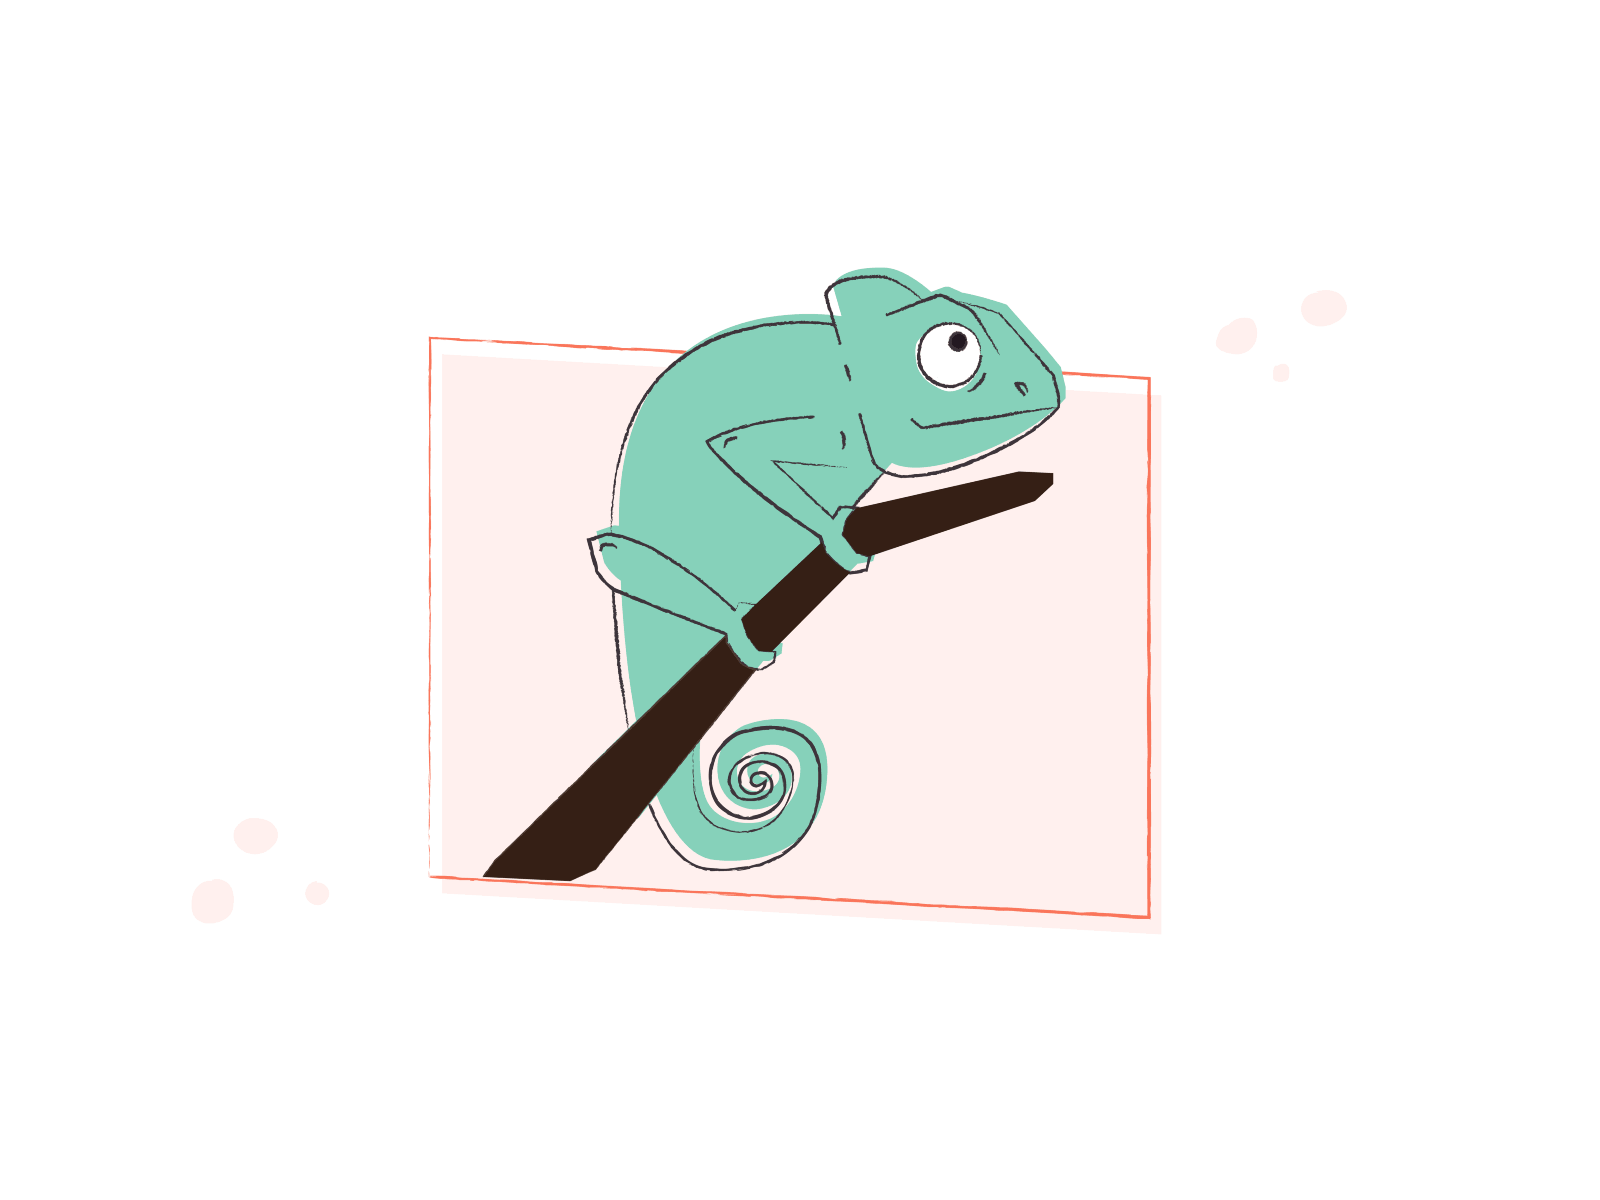 Chameleon animation art design illustration